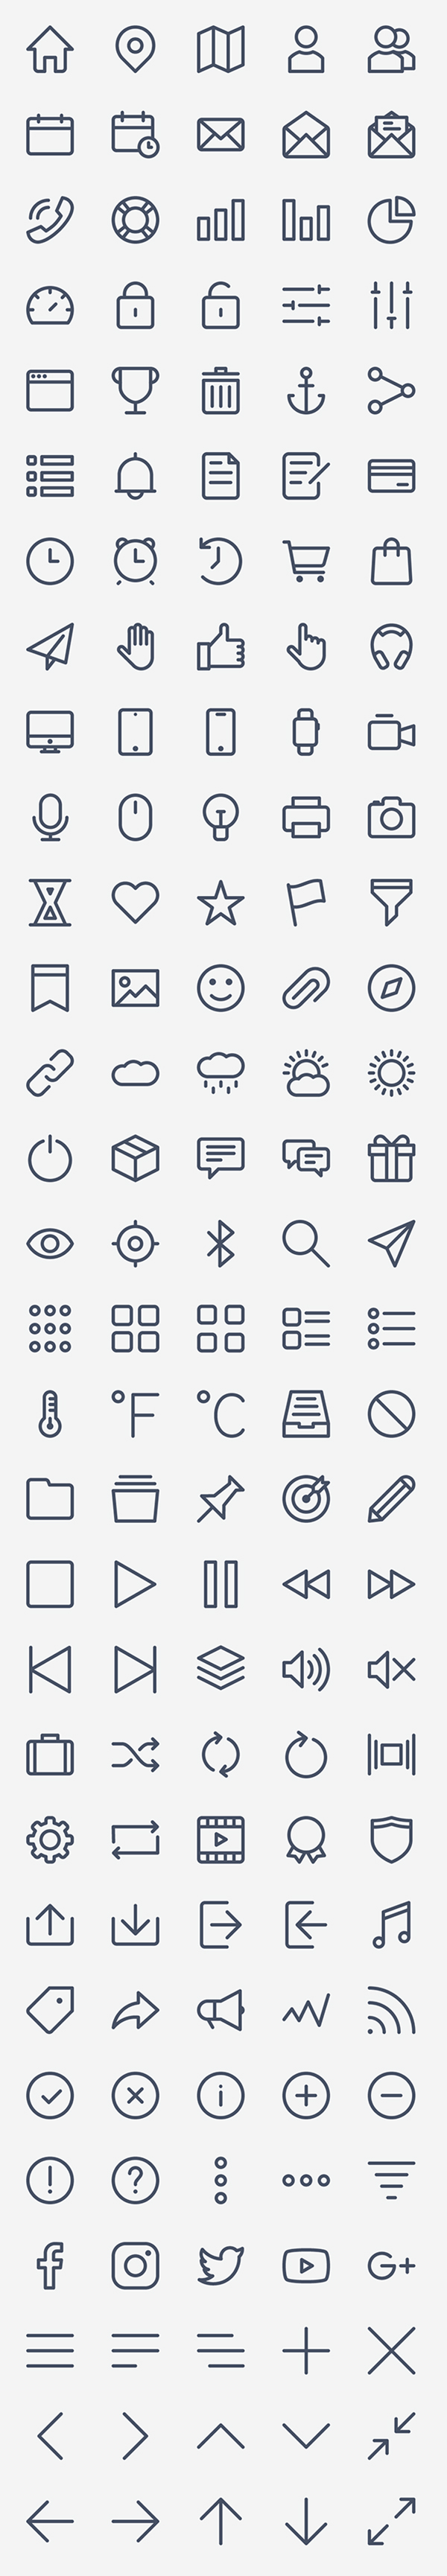 Free Basic Icon Set